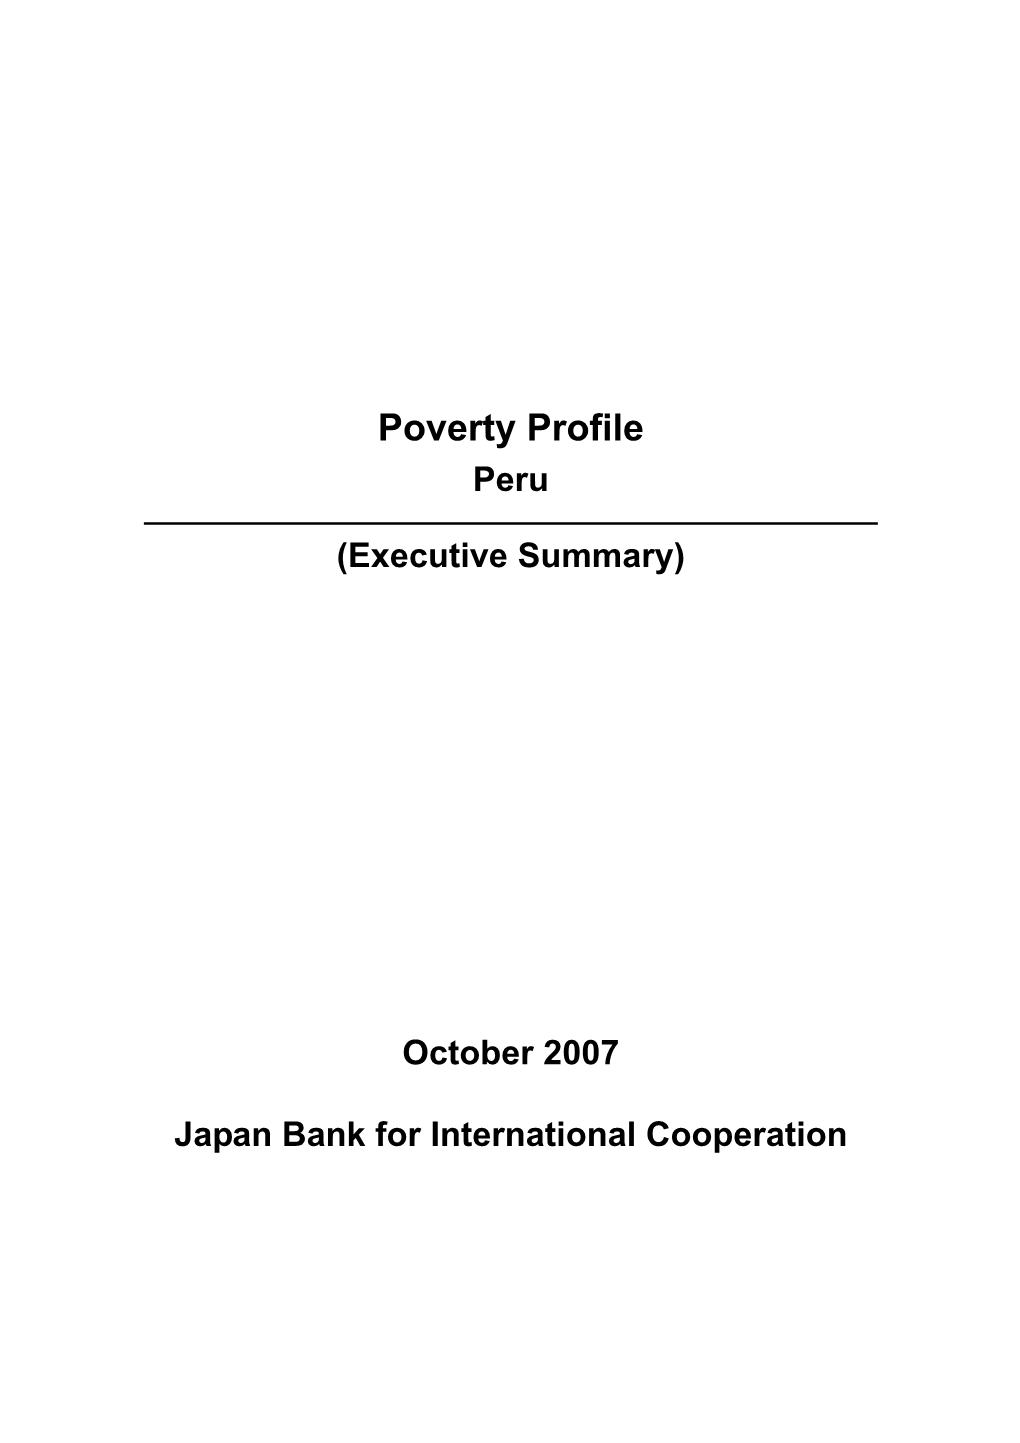 Poverty Profile Peru